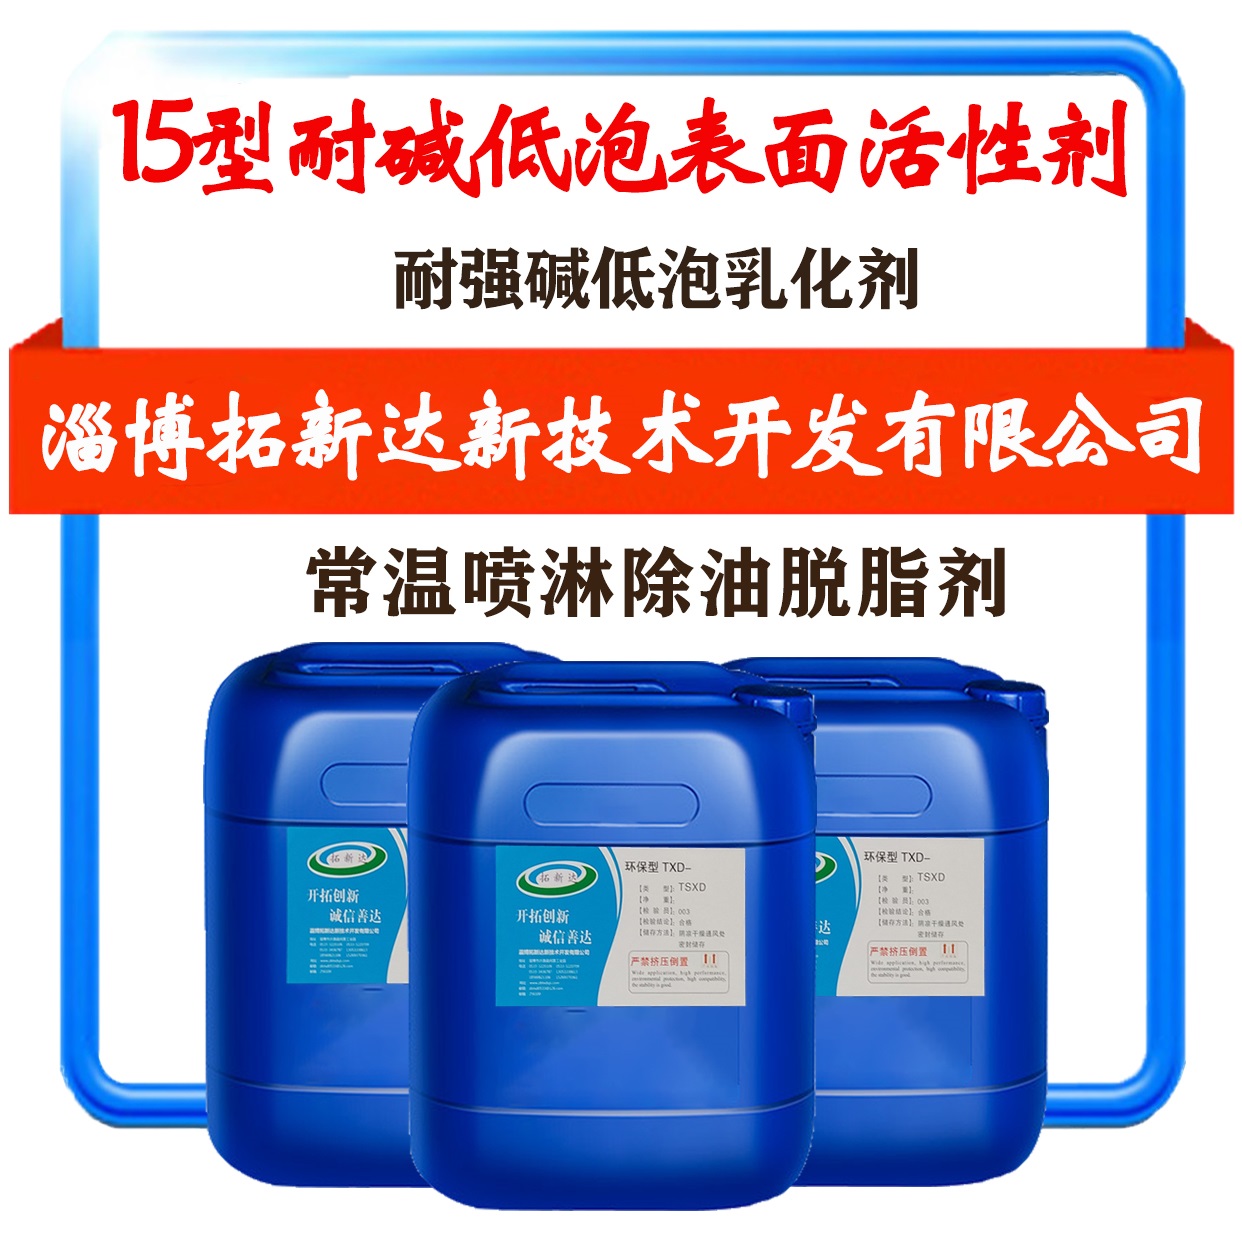 15型耐碱低泡表面活性剂常温耐碱低泡表面活性剂